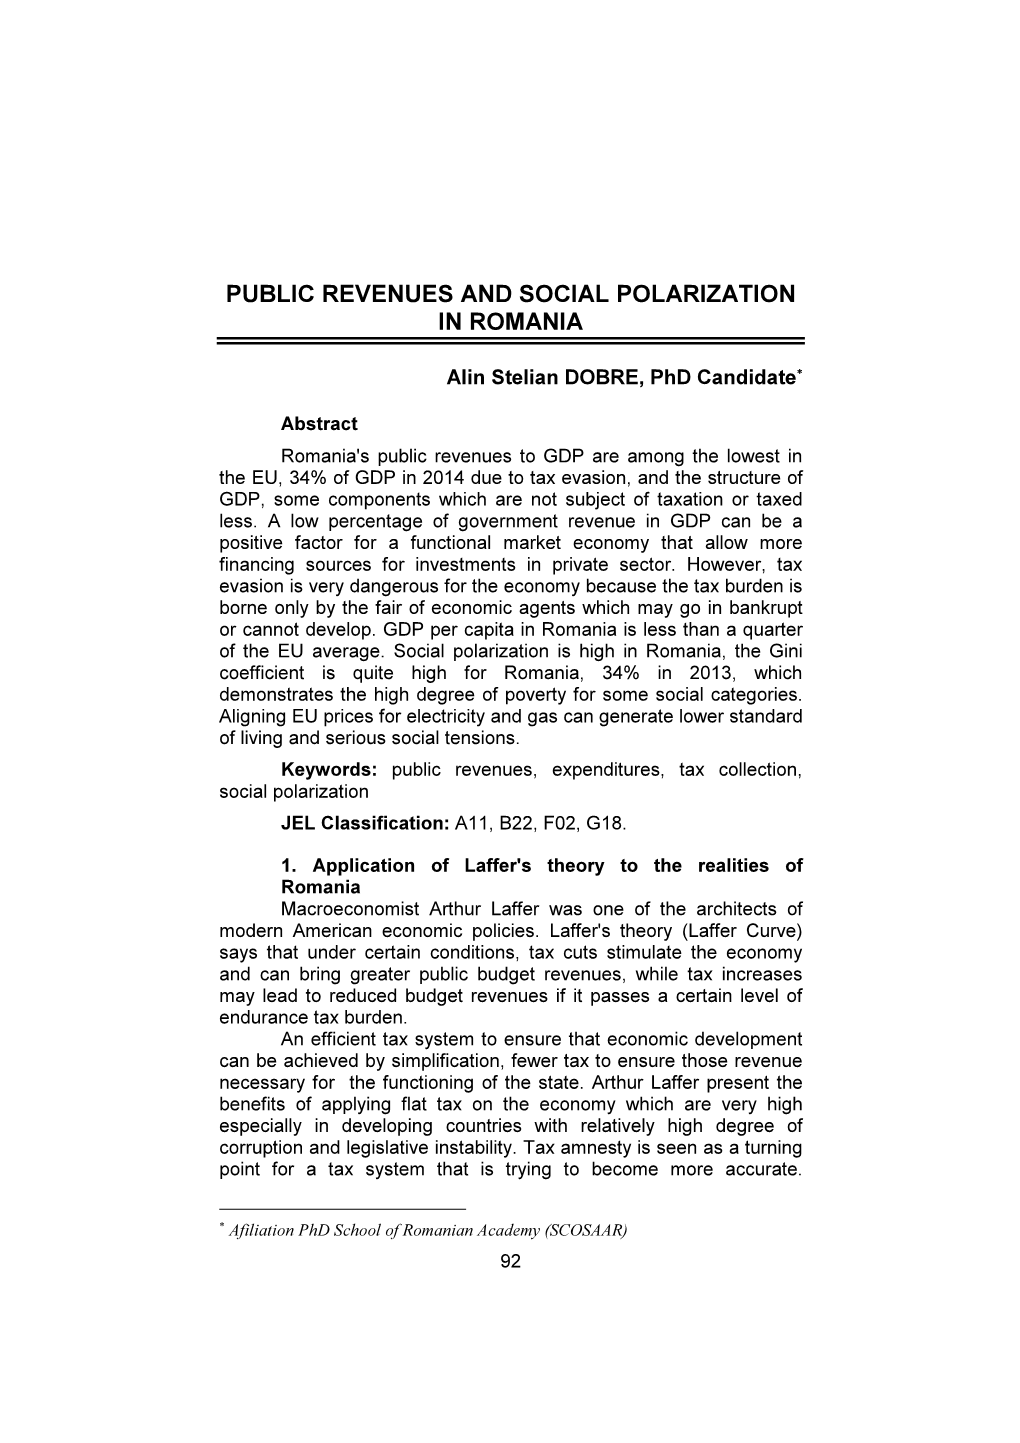 Public Revenues and Social Polarization in Romania